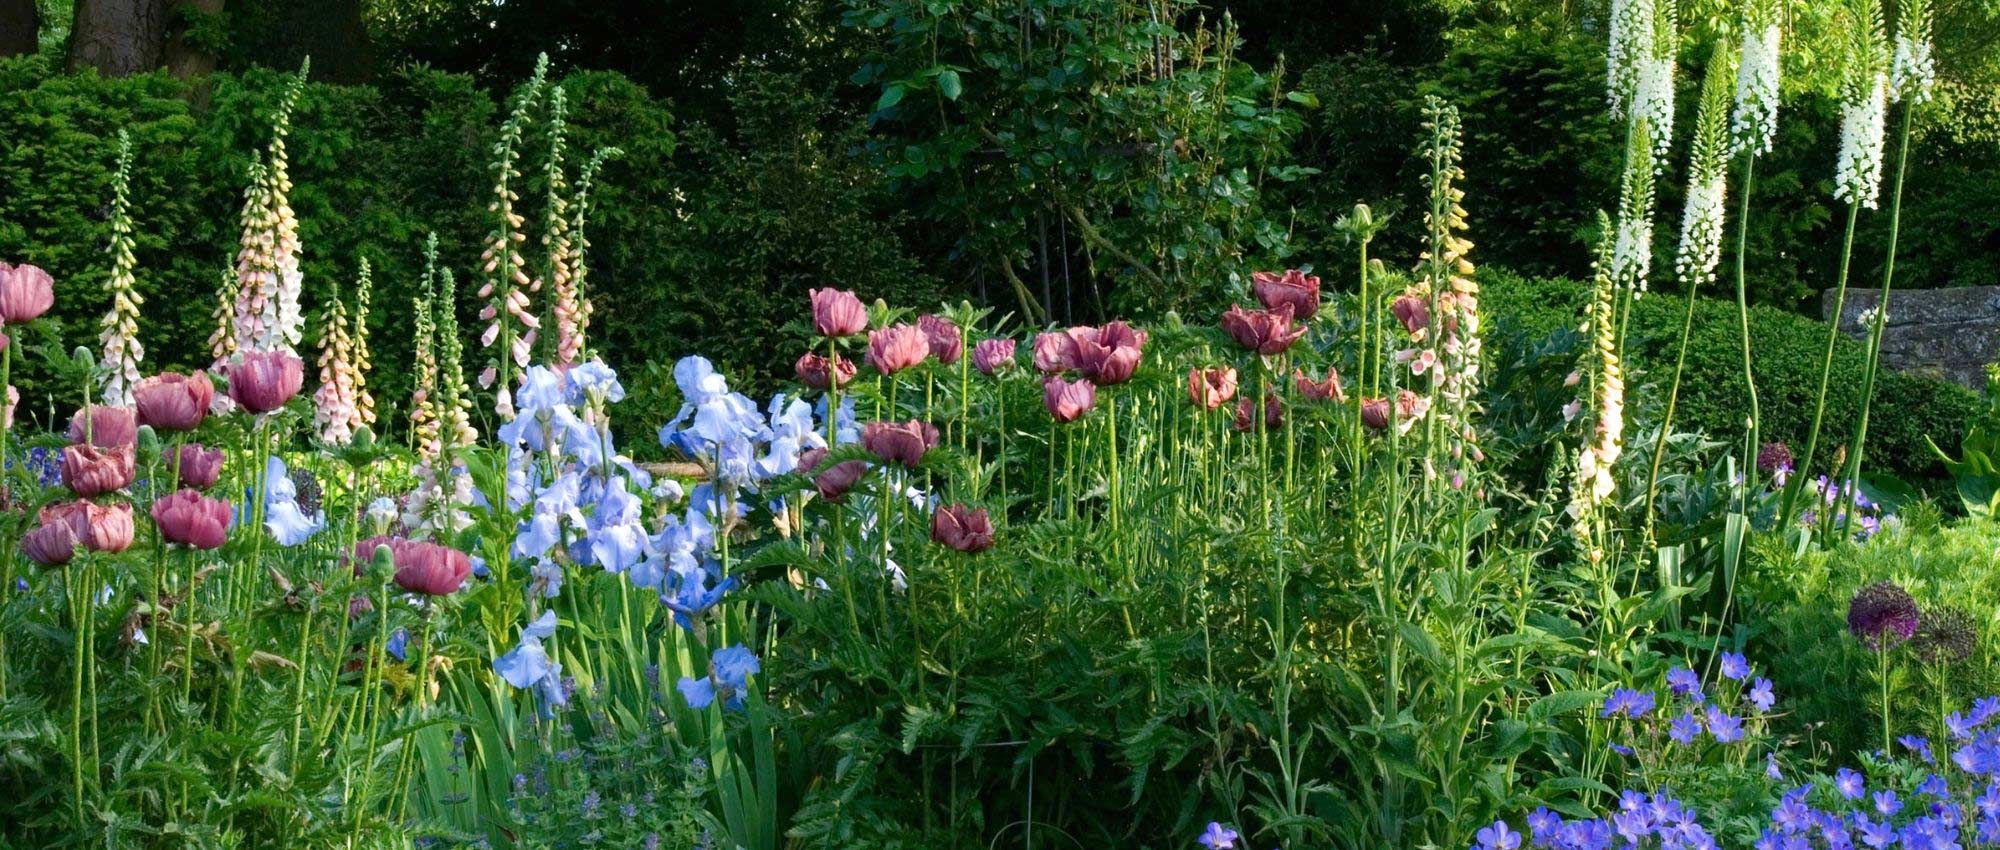  Jardin  anglais  10 plantes  embl matiques pour l am nager